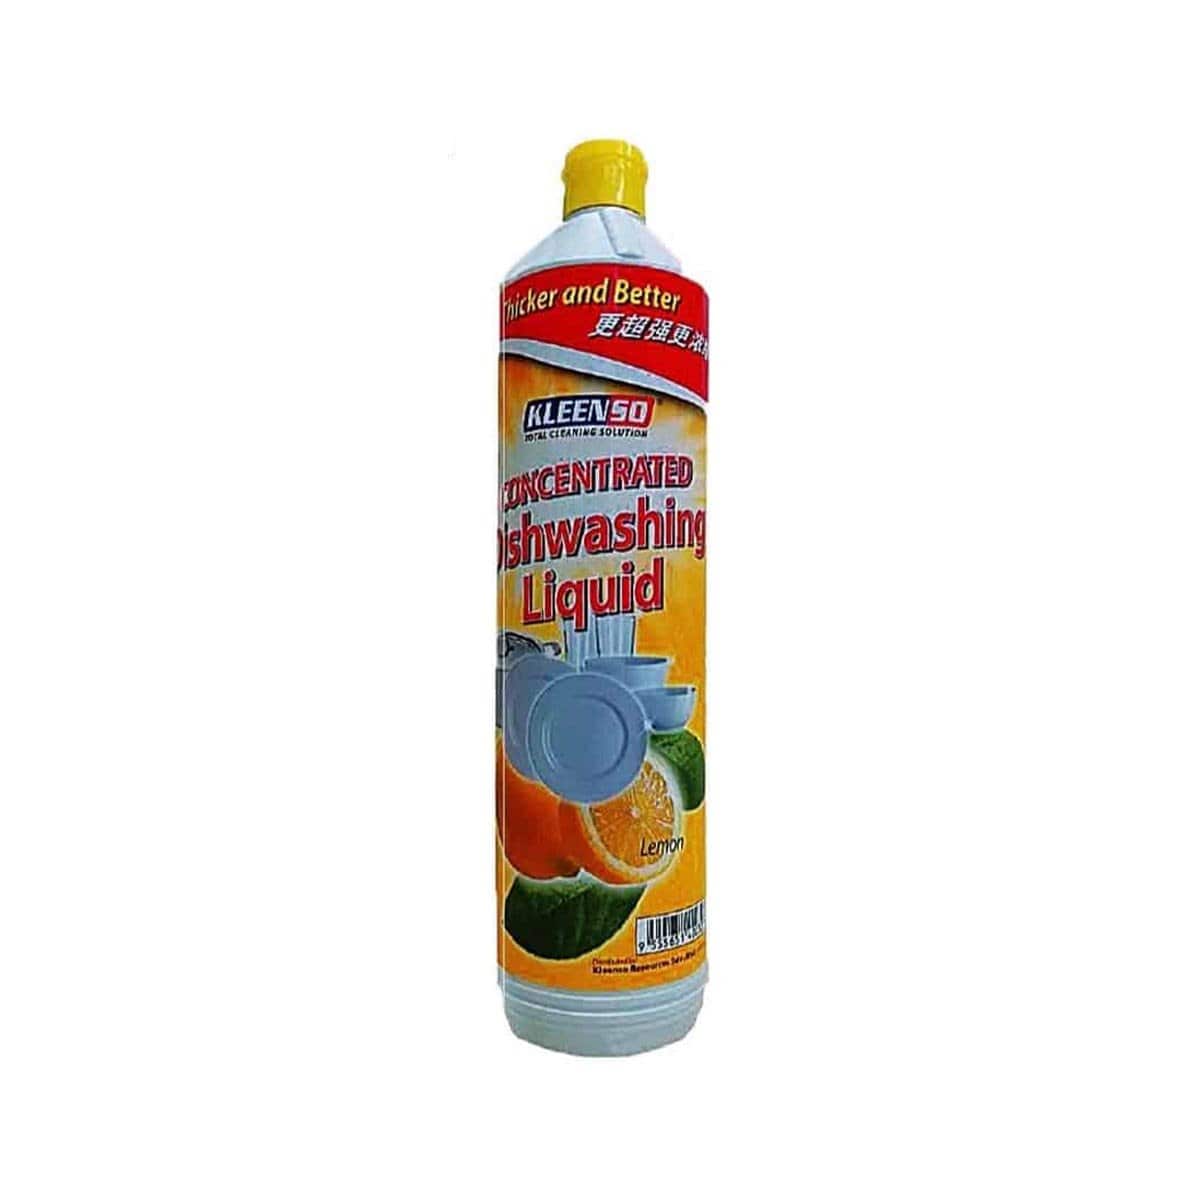 Kleenso Dishwashing Liquid (Lemon) 900g KHC818N